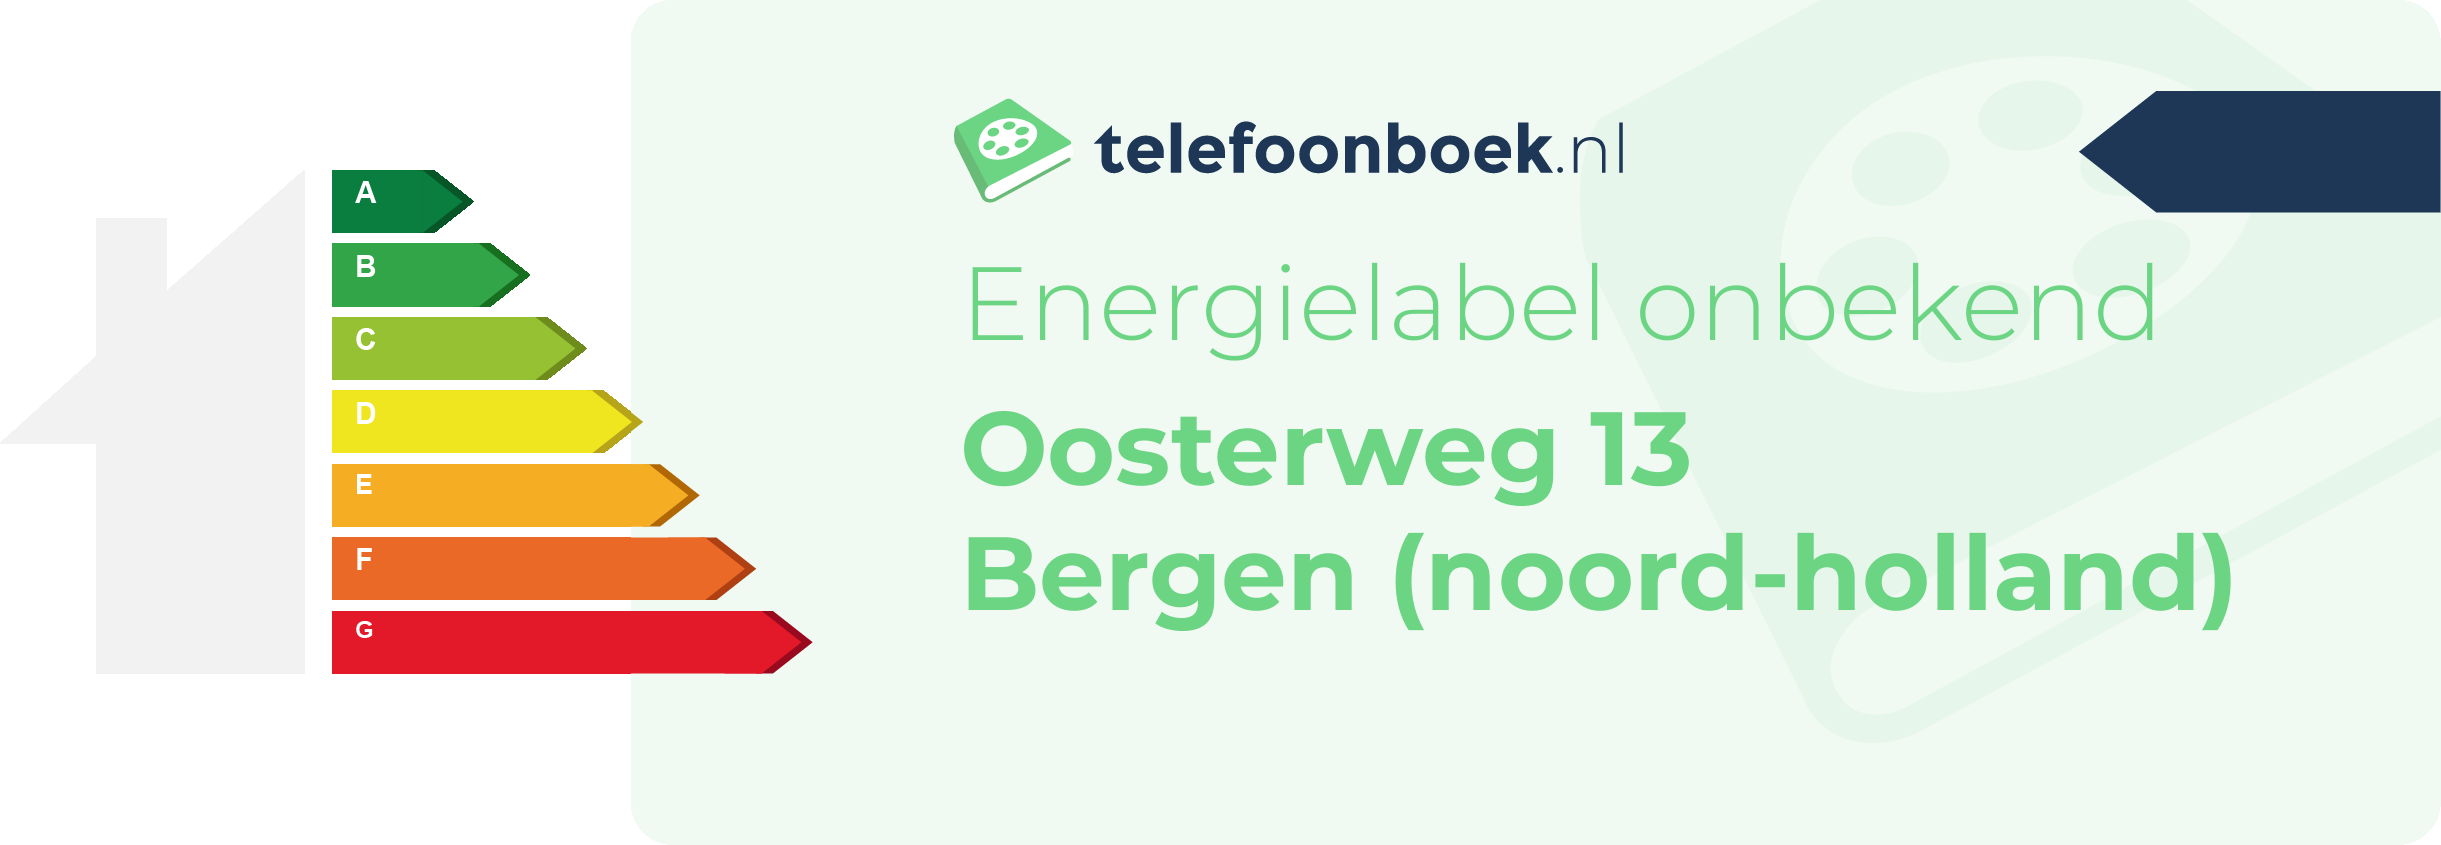 Energielabel Oosterweg 13 Bergen (Noord-Holland)